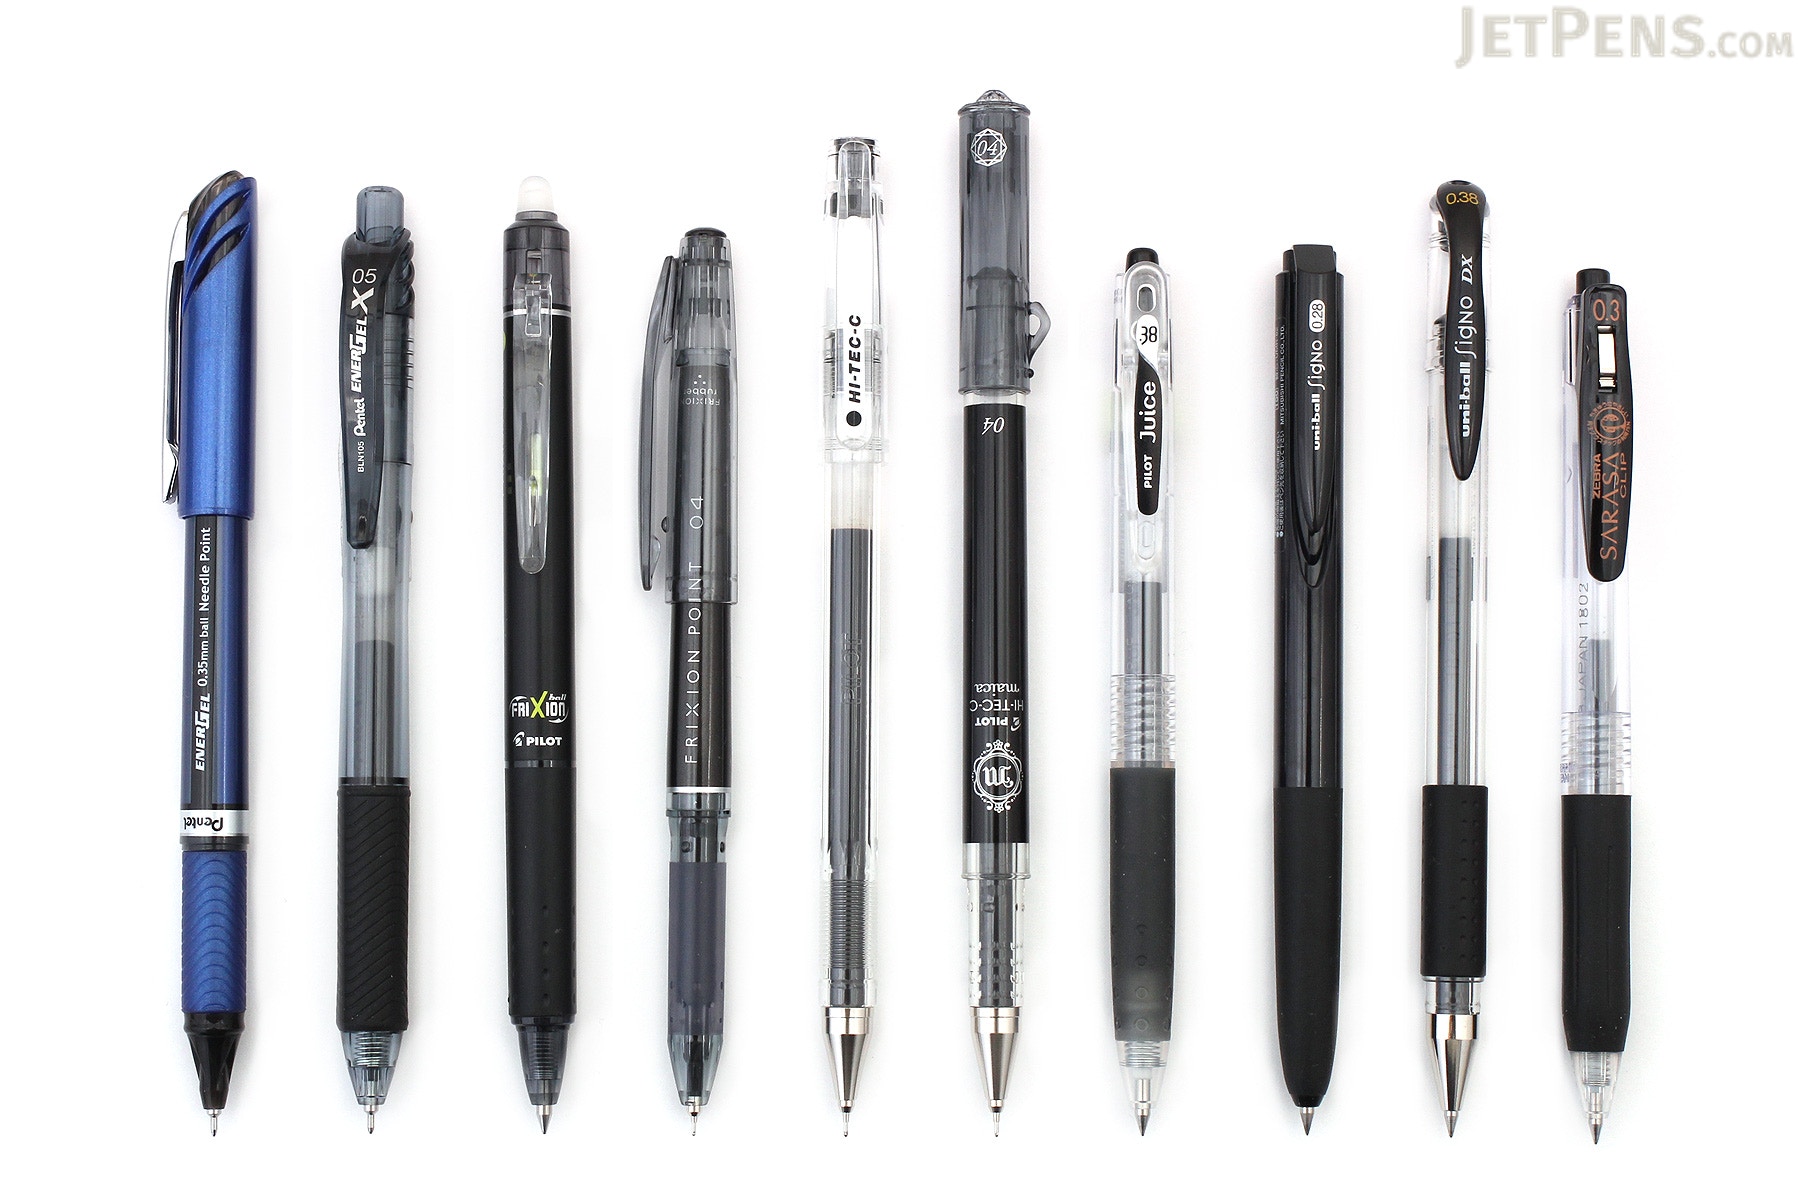 JetPens Black Gel Pen Sampler - JetPens.com